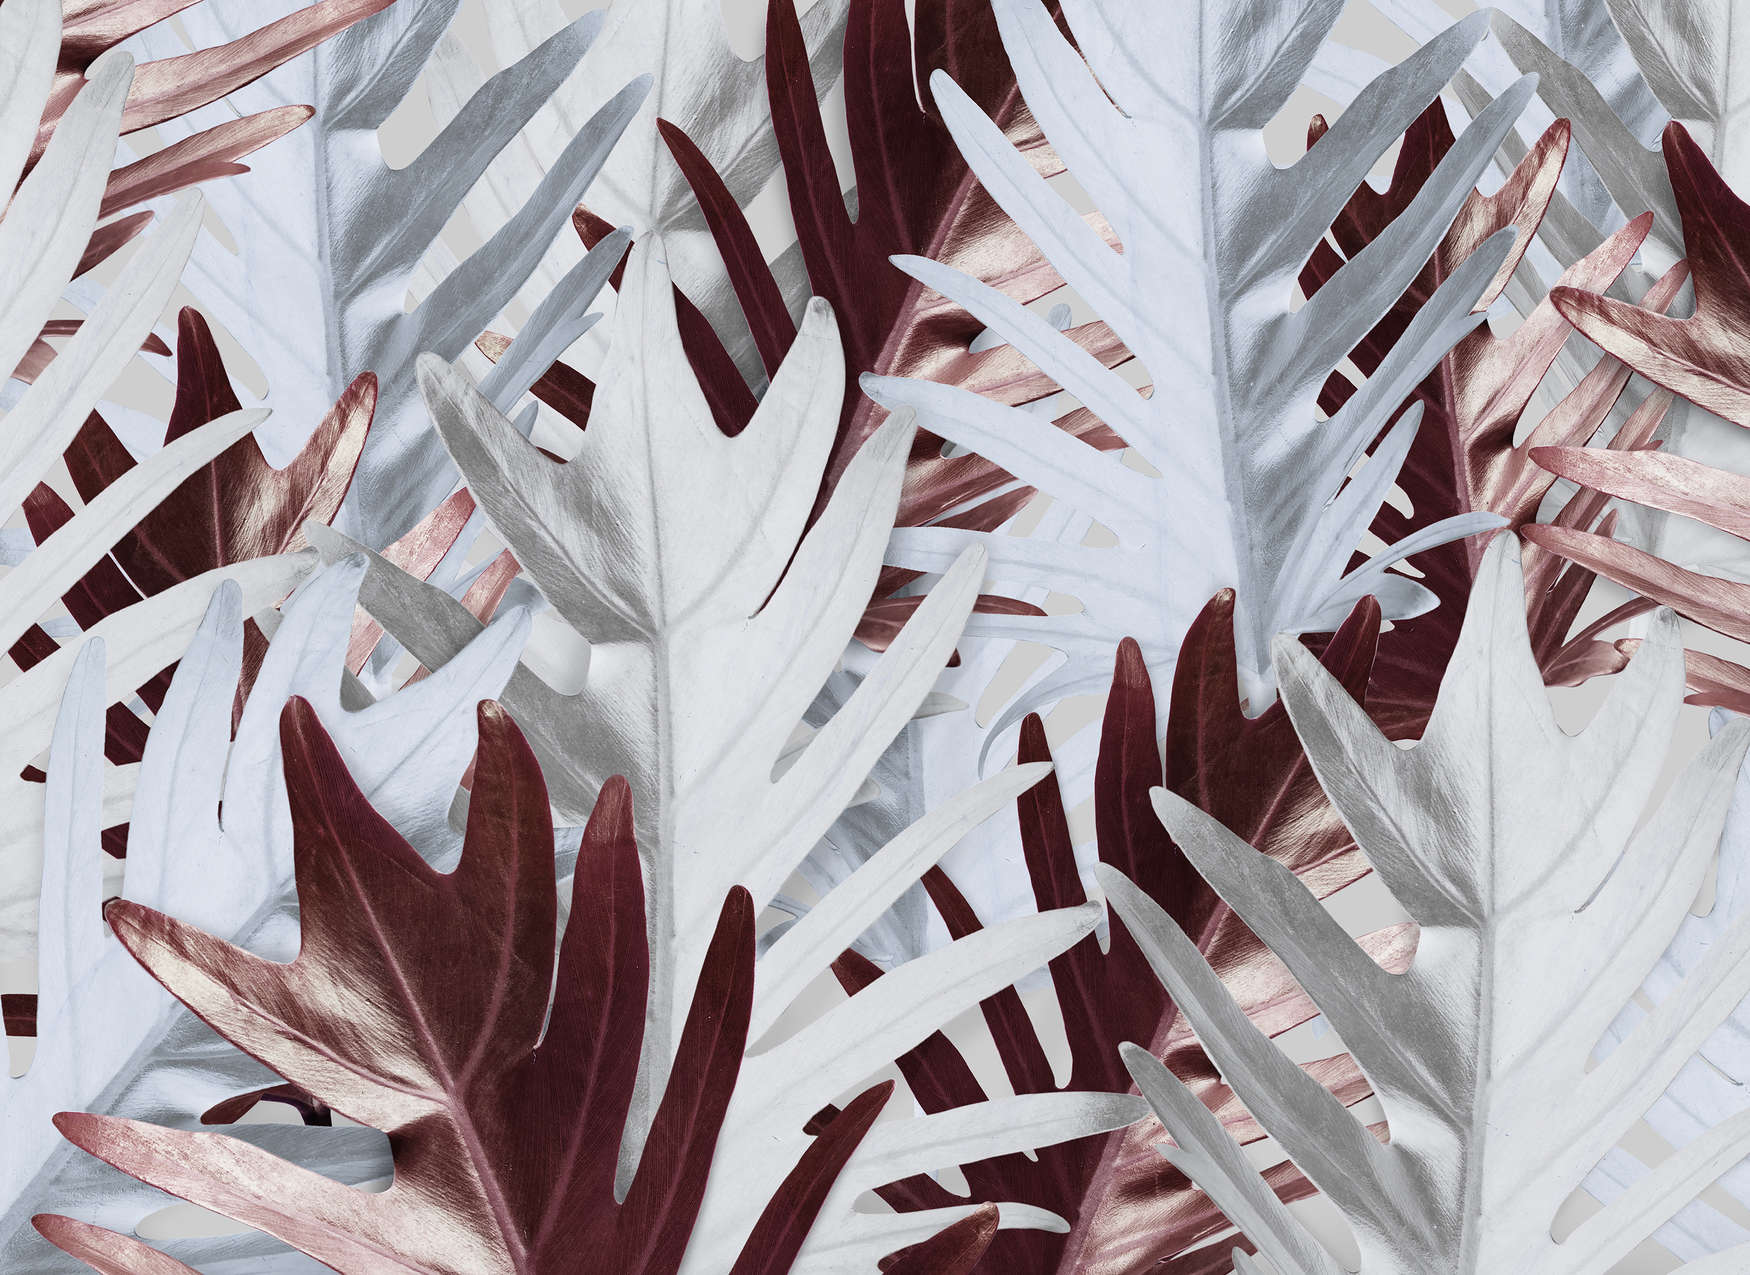             Fototapete mit Dschungelblättern in sanften Farbtönen – Rot, Weiß
        